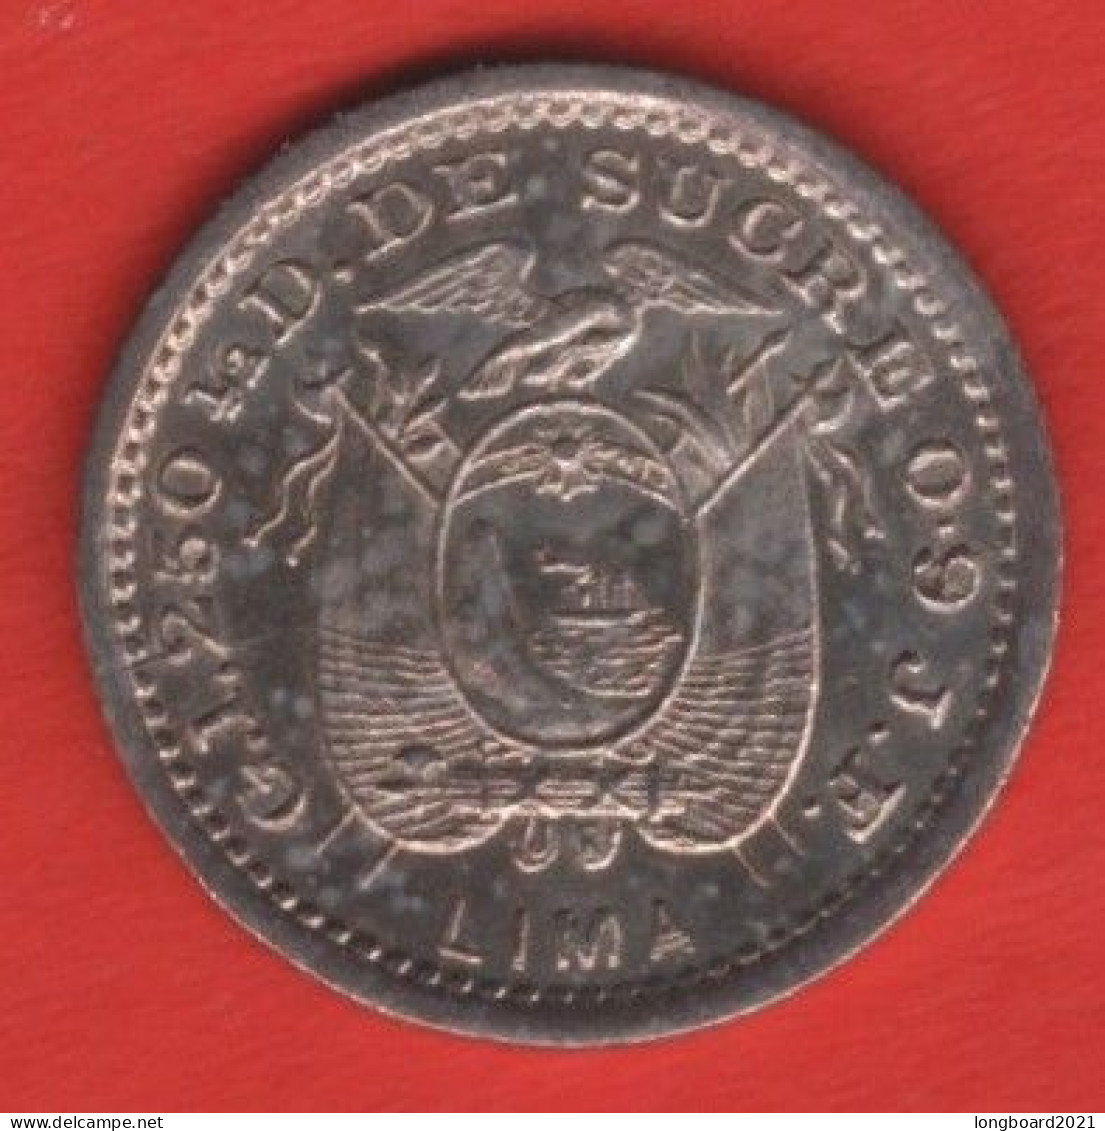 ECUADOR - 1/2 DECIMO 1897 -SILVER- - Ecuador